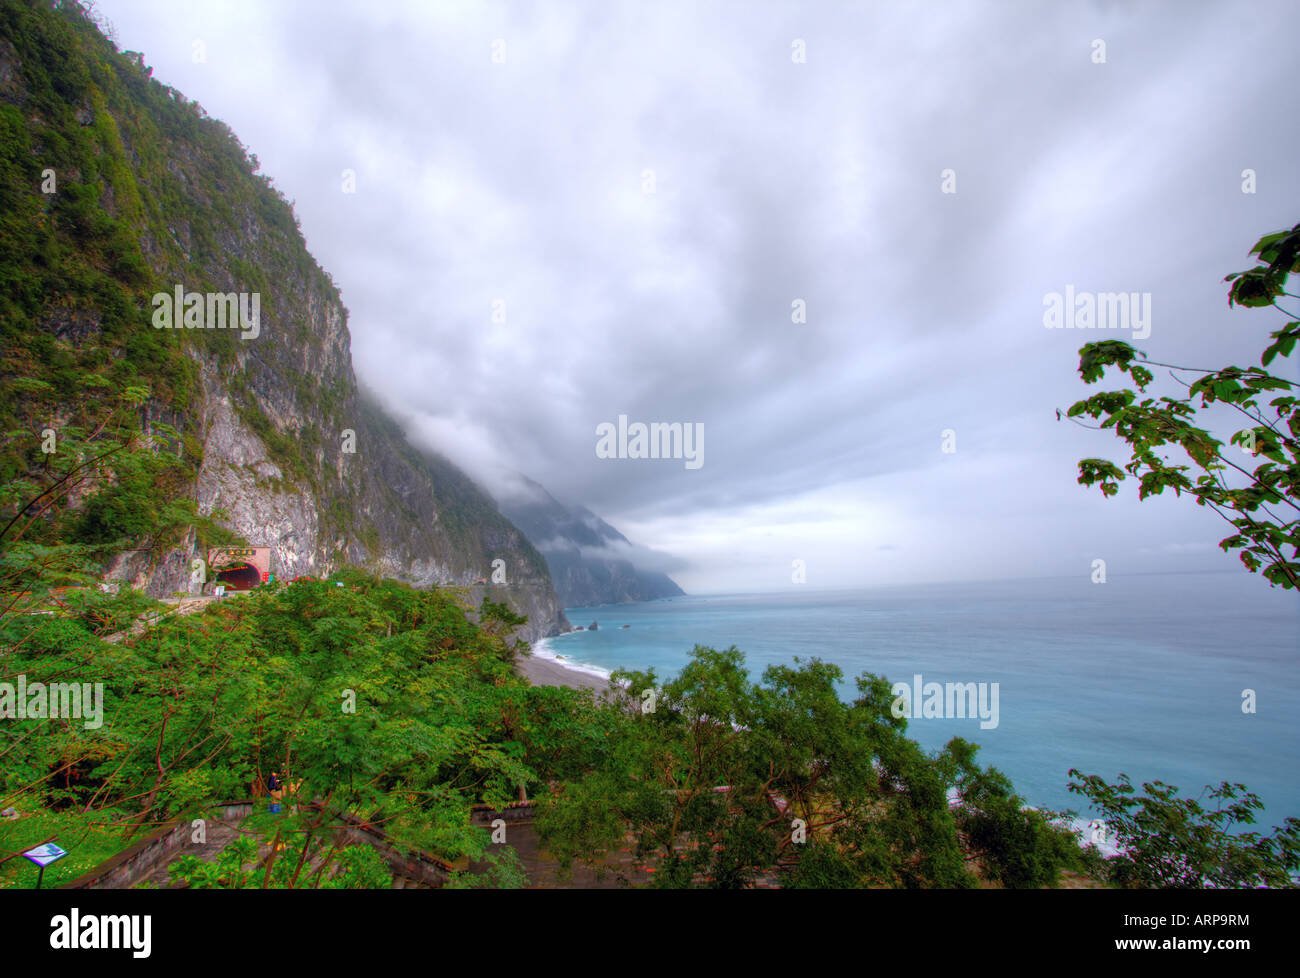 Ching Shui Cliff along SuHua Coast Highway, East Coast, Hua Lian, Taiwan Stock Photo